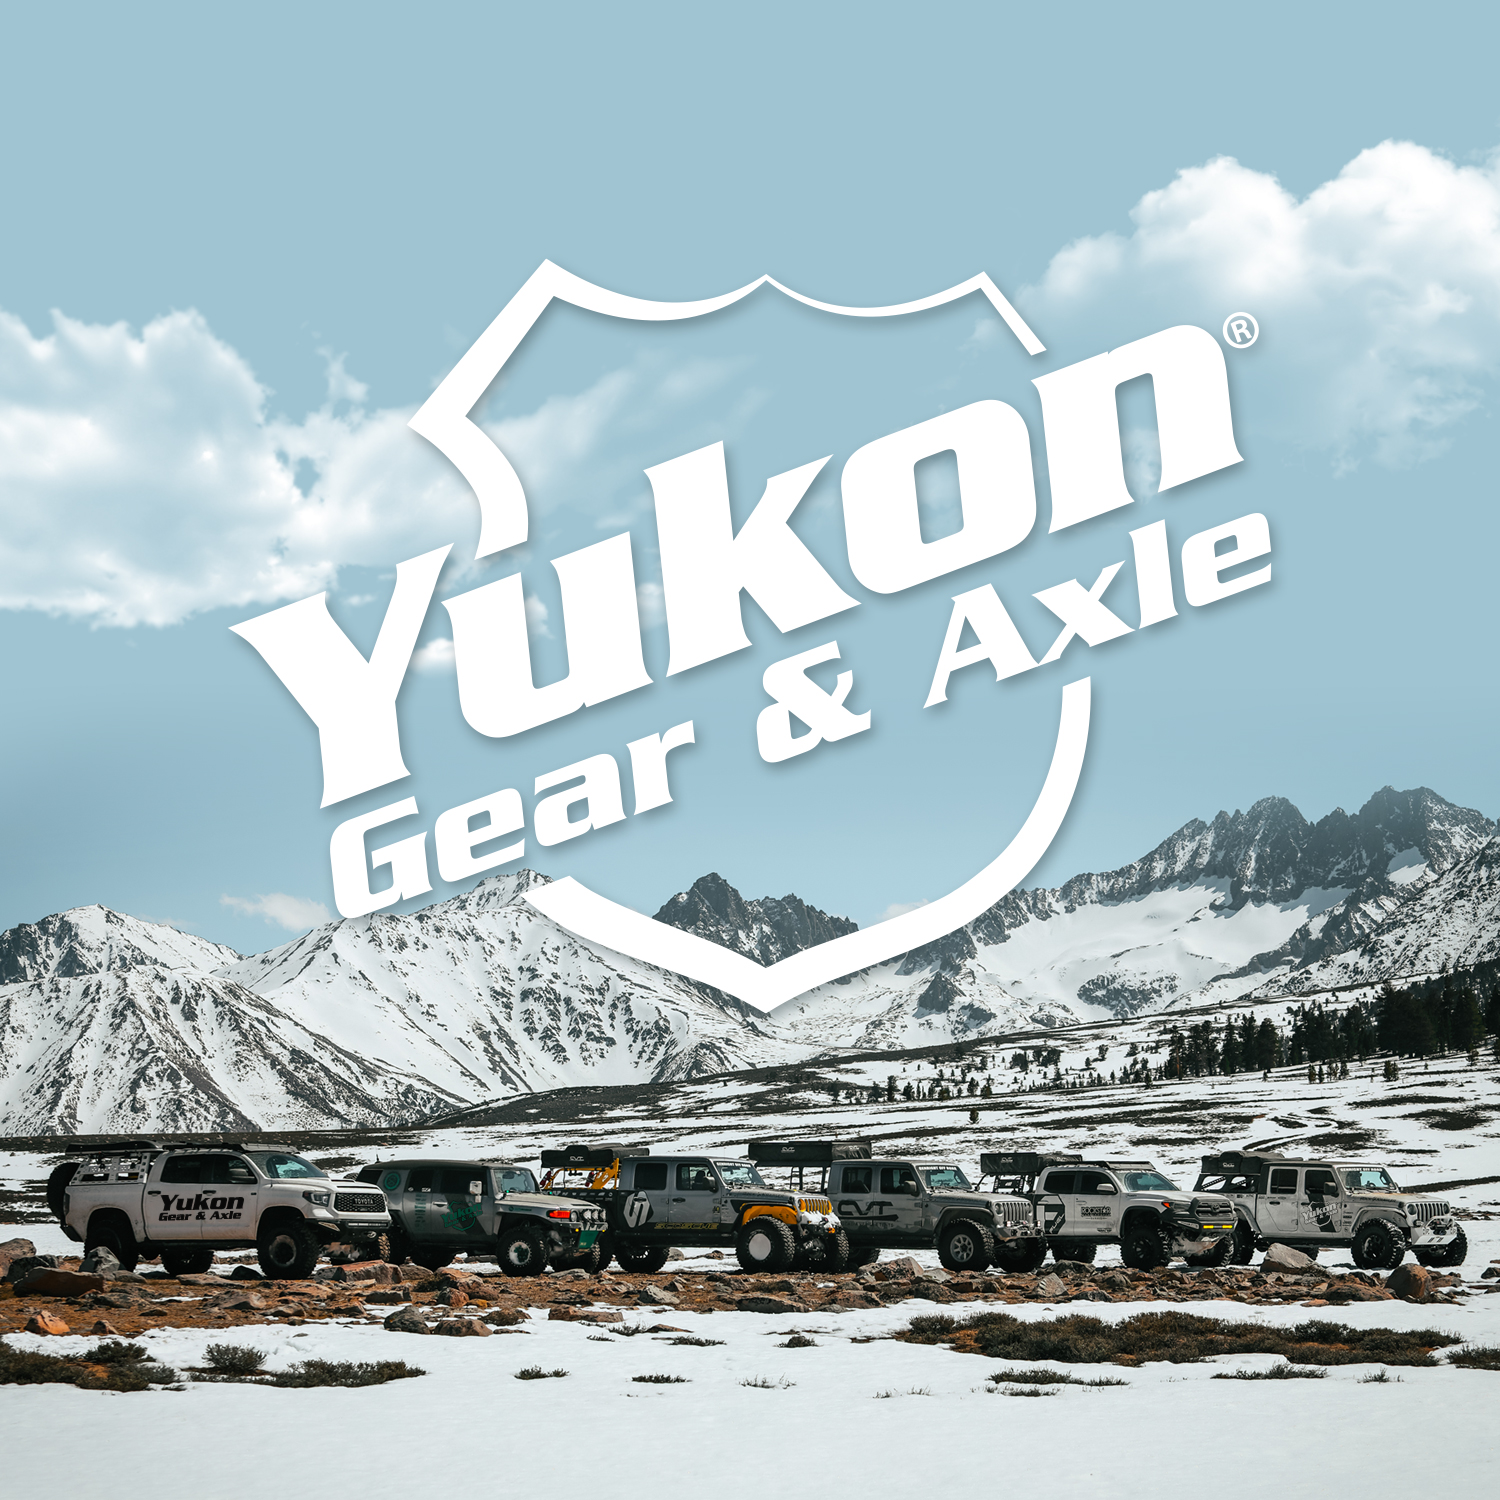 Medium-Sized Clamshell for Yukon Carrier Bearing Puller 